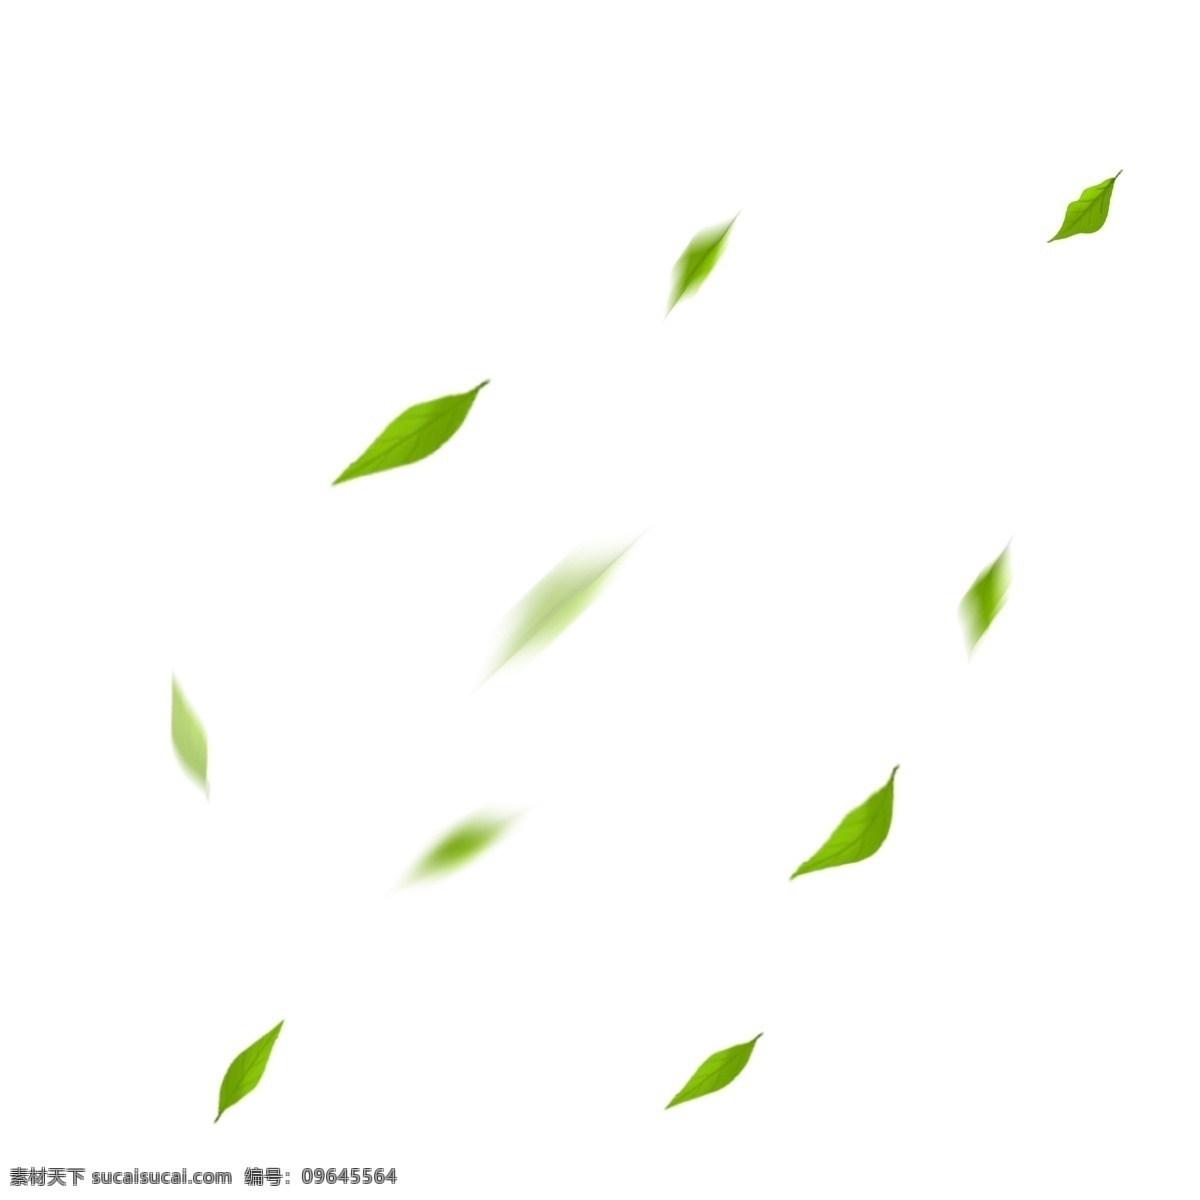 飞舞 漂浮树叶 树木 树叶 叶子 飞舞绿叶 装饰绿叶 茶叶 清新 小清新 落叶 地球日 世界地球日 保护环境 树叶装饰 绿叶装饰